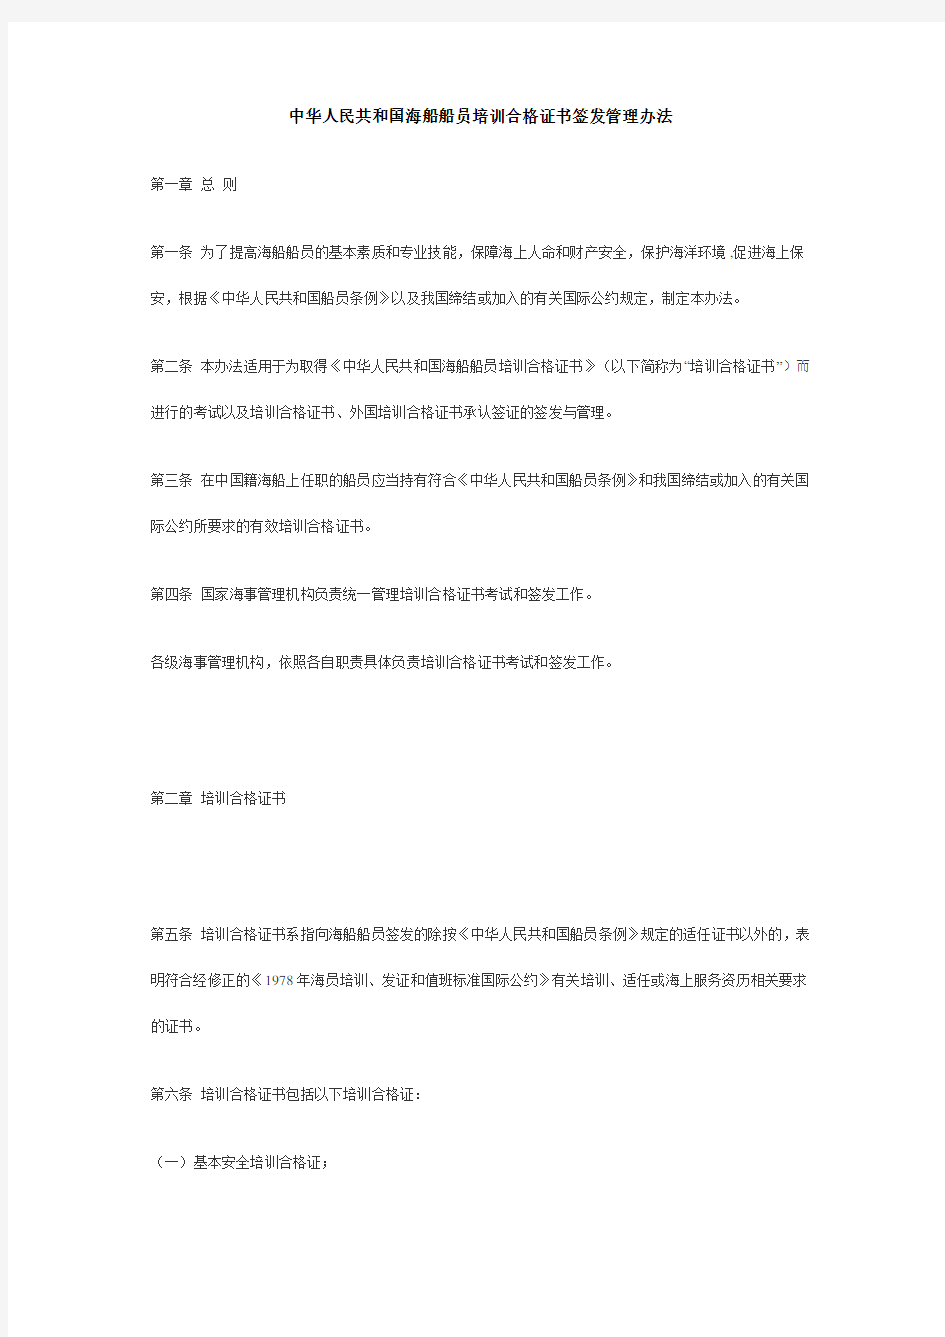 中华人民共和国海船船员培训合格证书签发管理办法